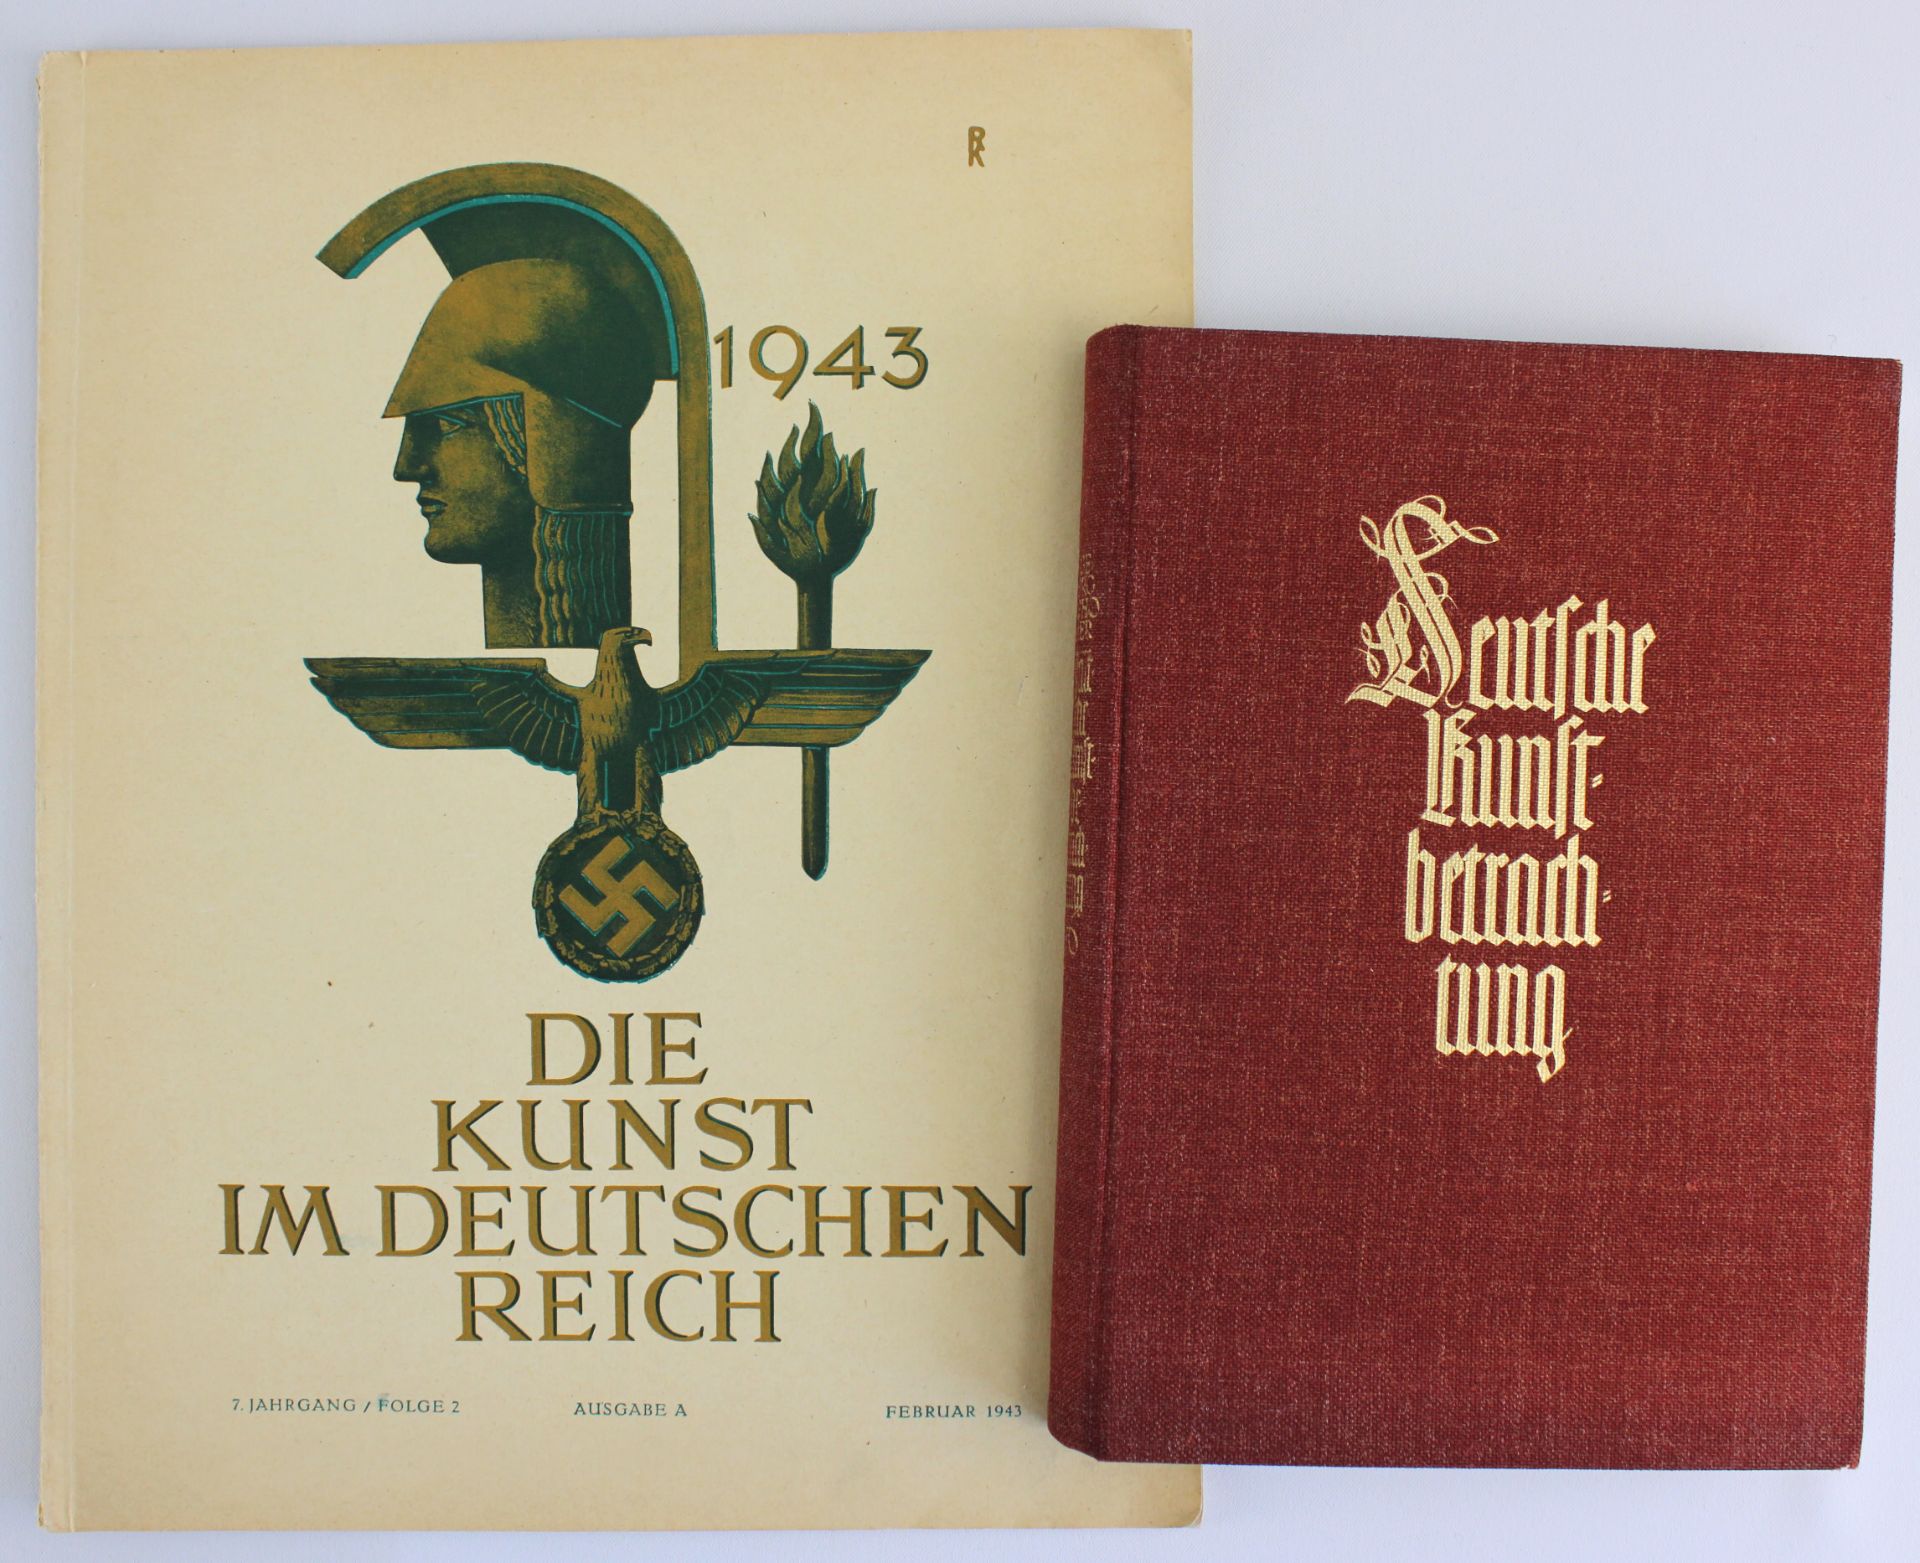 2 literar.Werke 1939-1943 "Die Kunst im Deutschen Reich" u. "Deutsche Kunstbetrachtung"